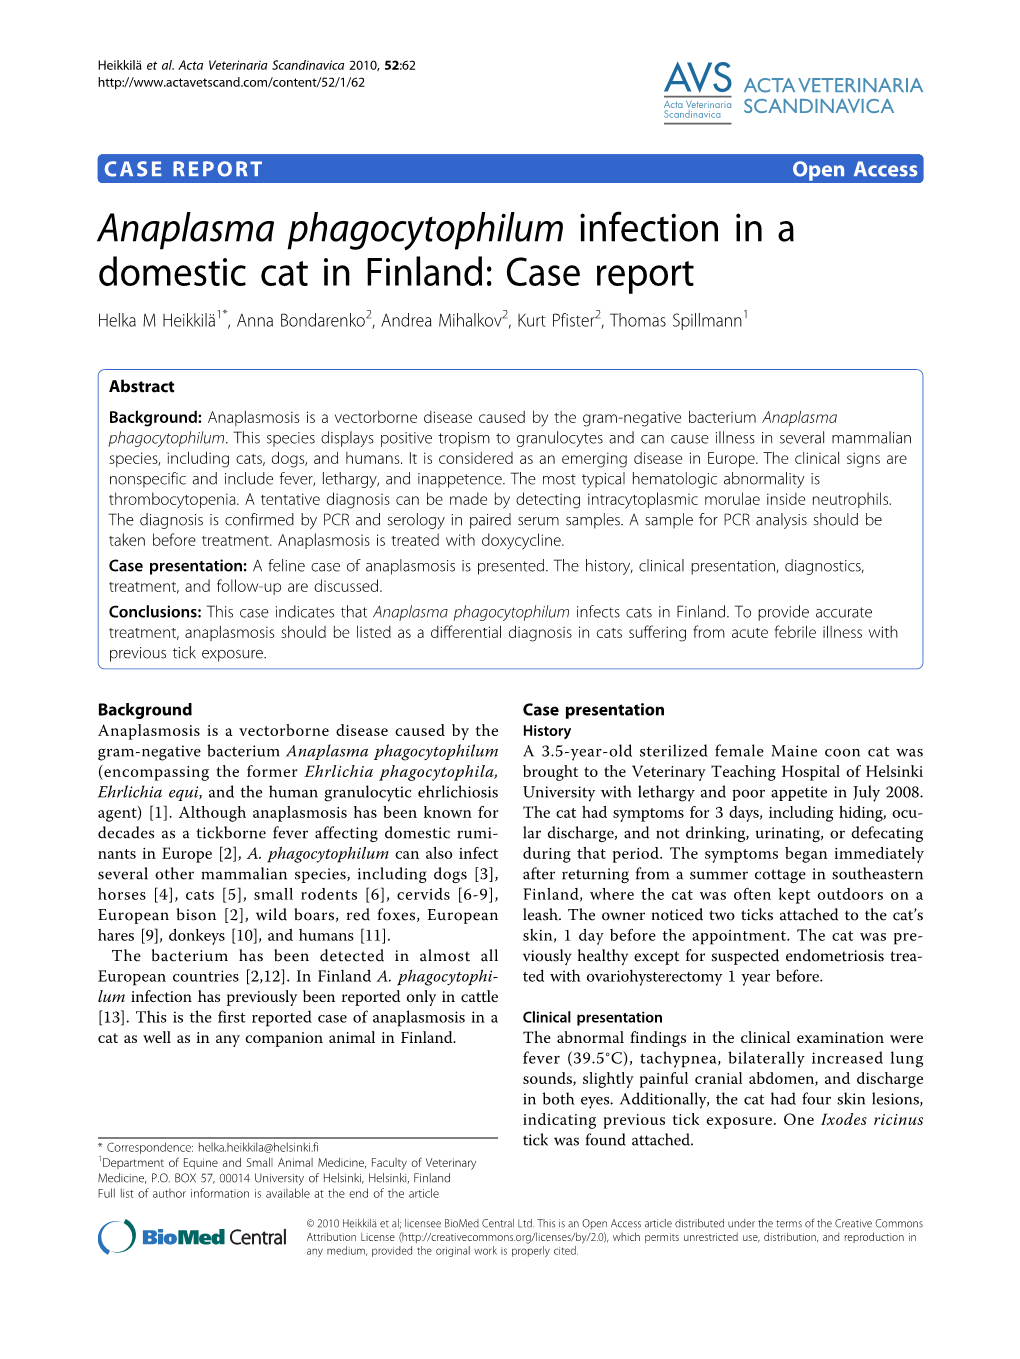 Anaplasma Phagocytophilum Infection in a Domestic Cat in Finland: Case Report Helka M Heikkilä1*, Anna Bondarenko2, Andrea Mihalkov2, Kurt Pfister2, Thomas Spillmann1